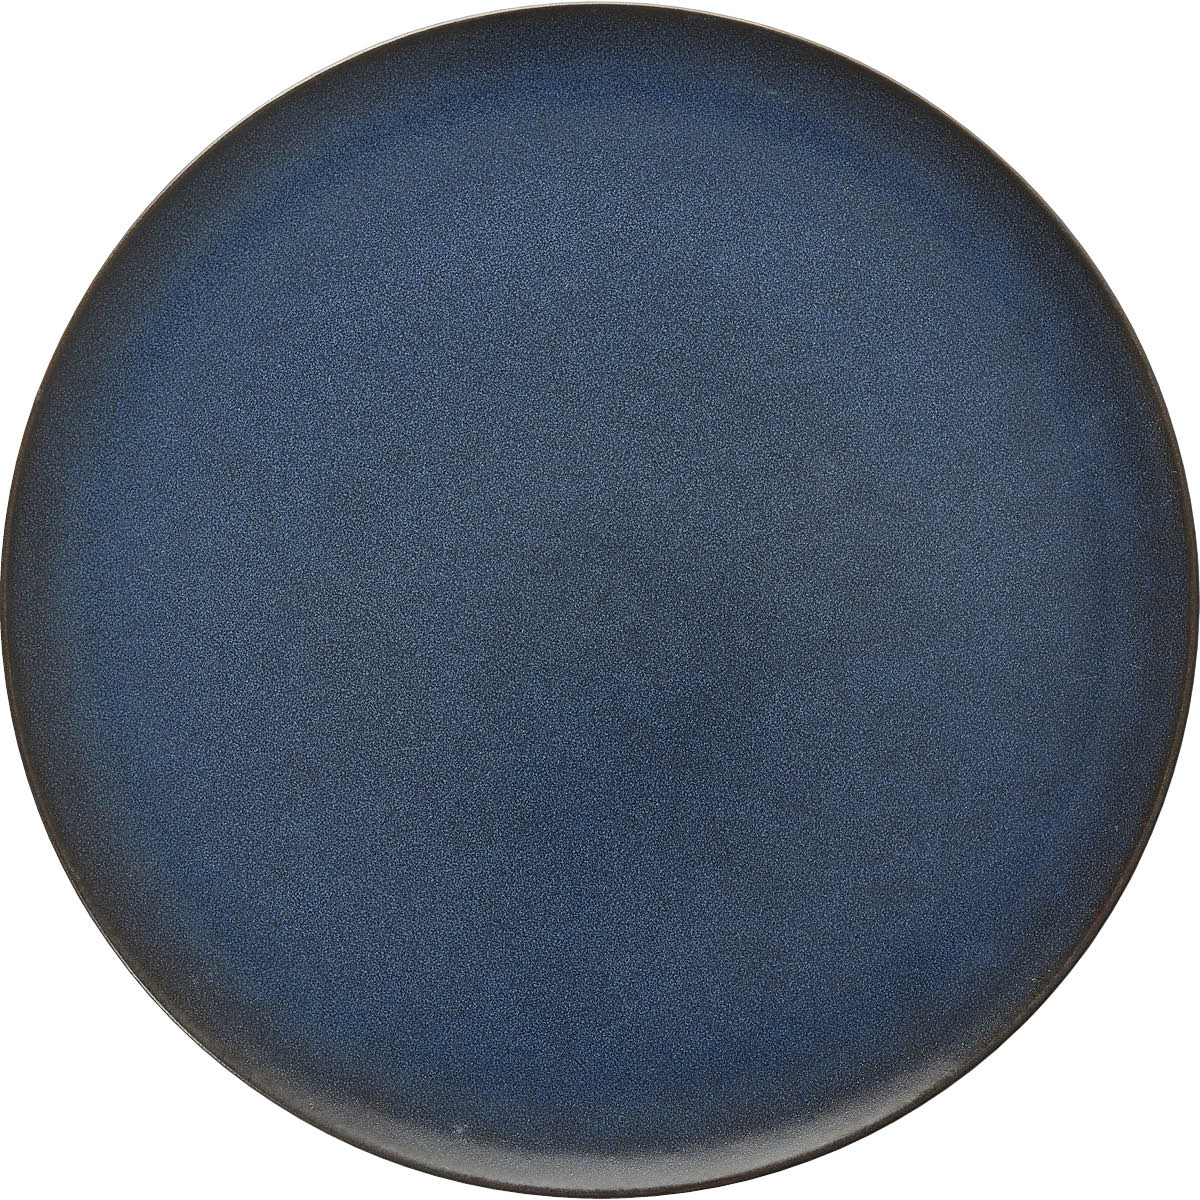 aida-raw-tallrik-stengods-28-cm-midnight-blue